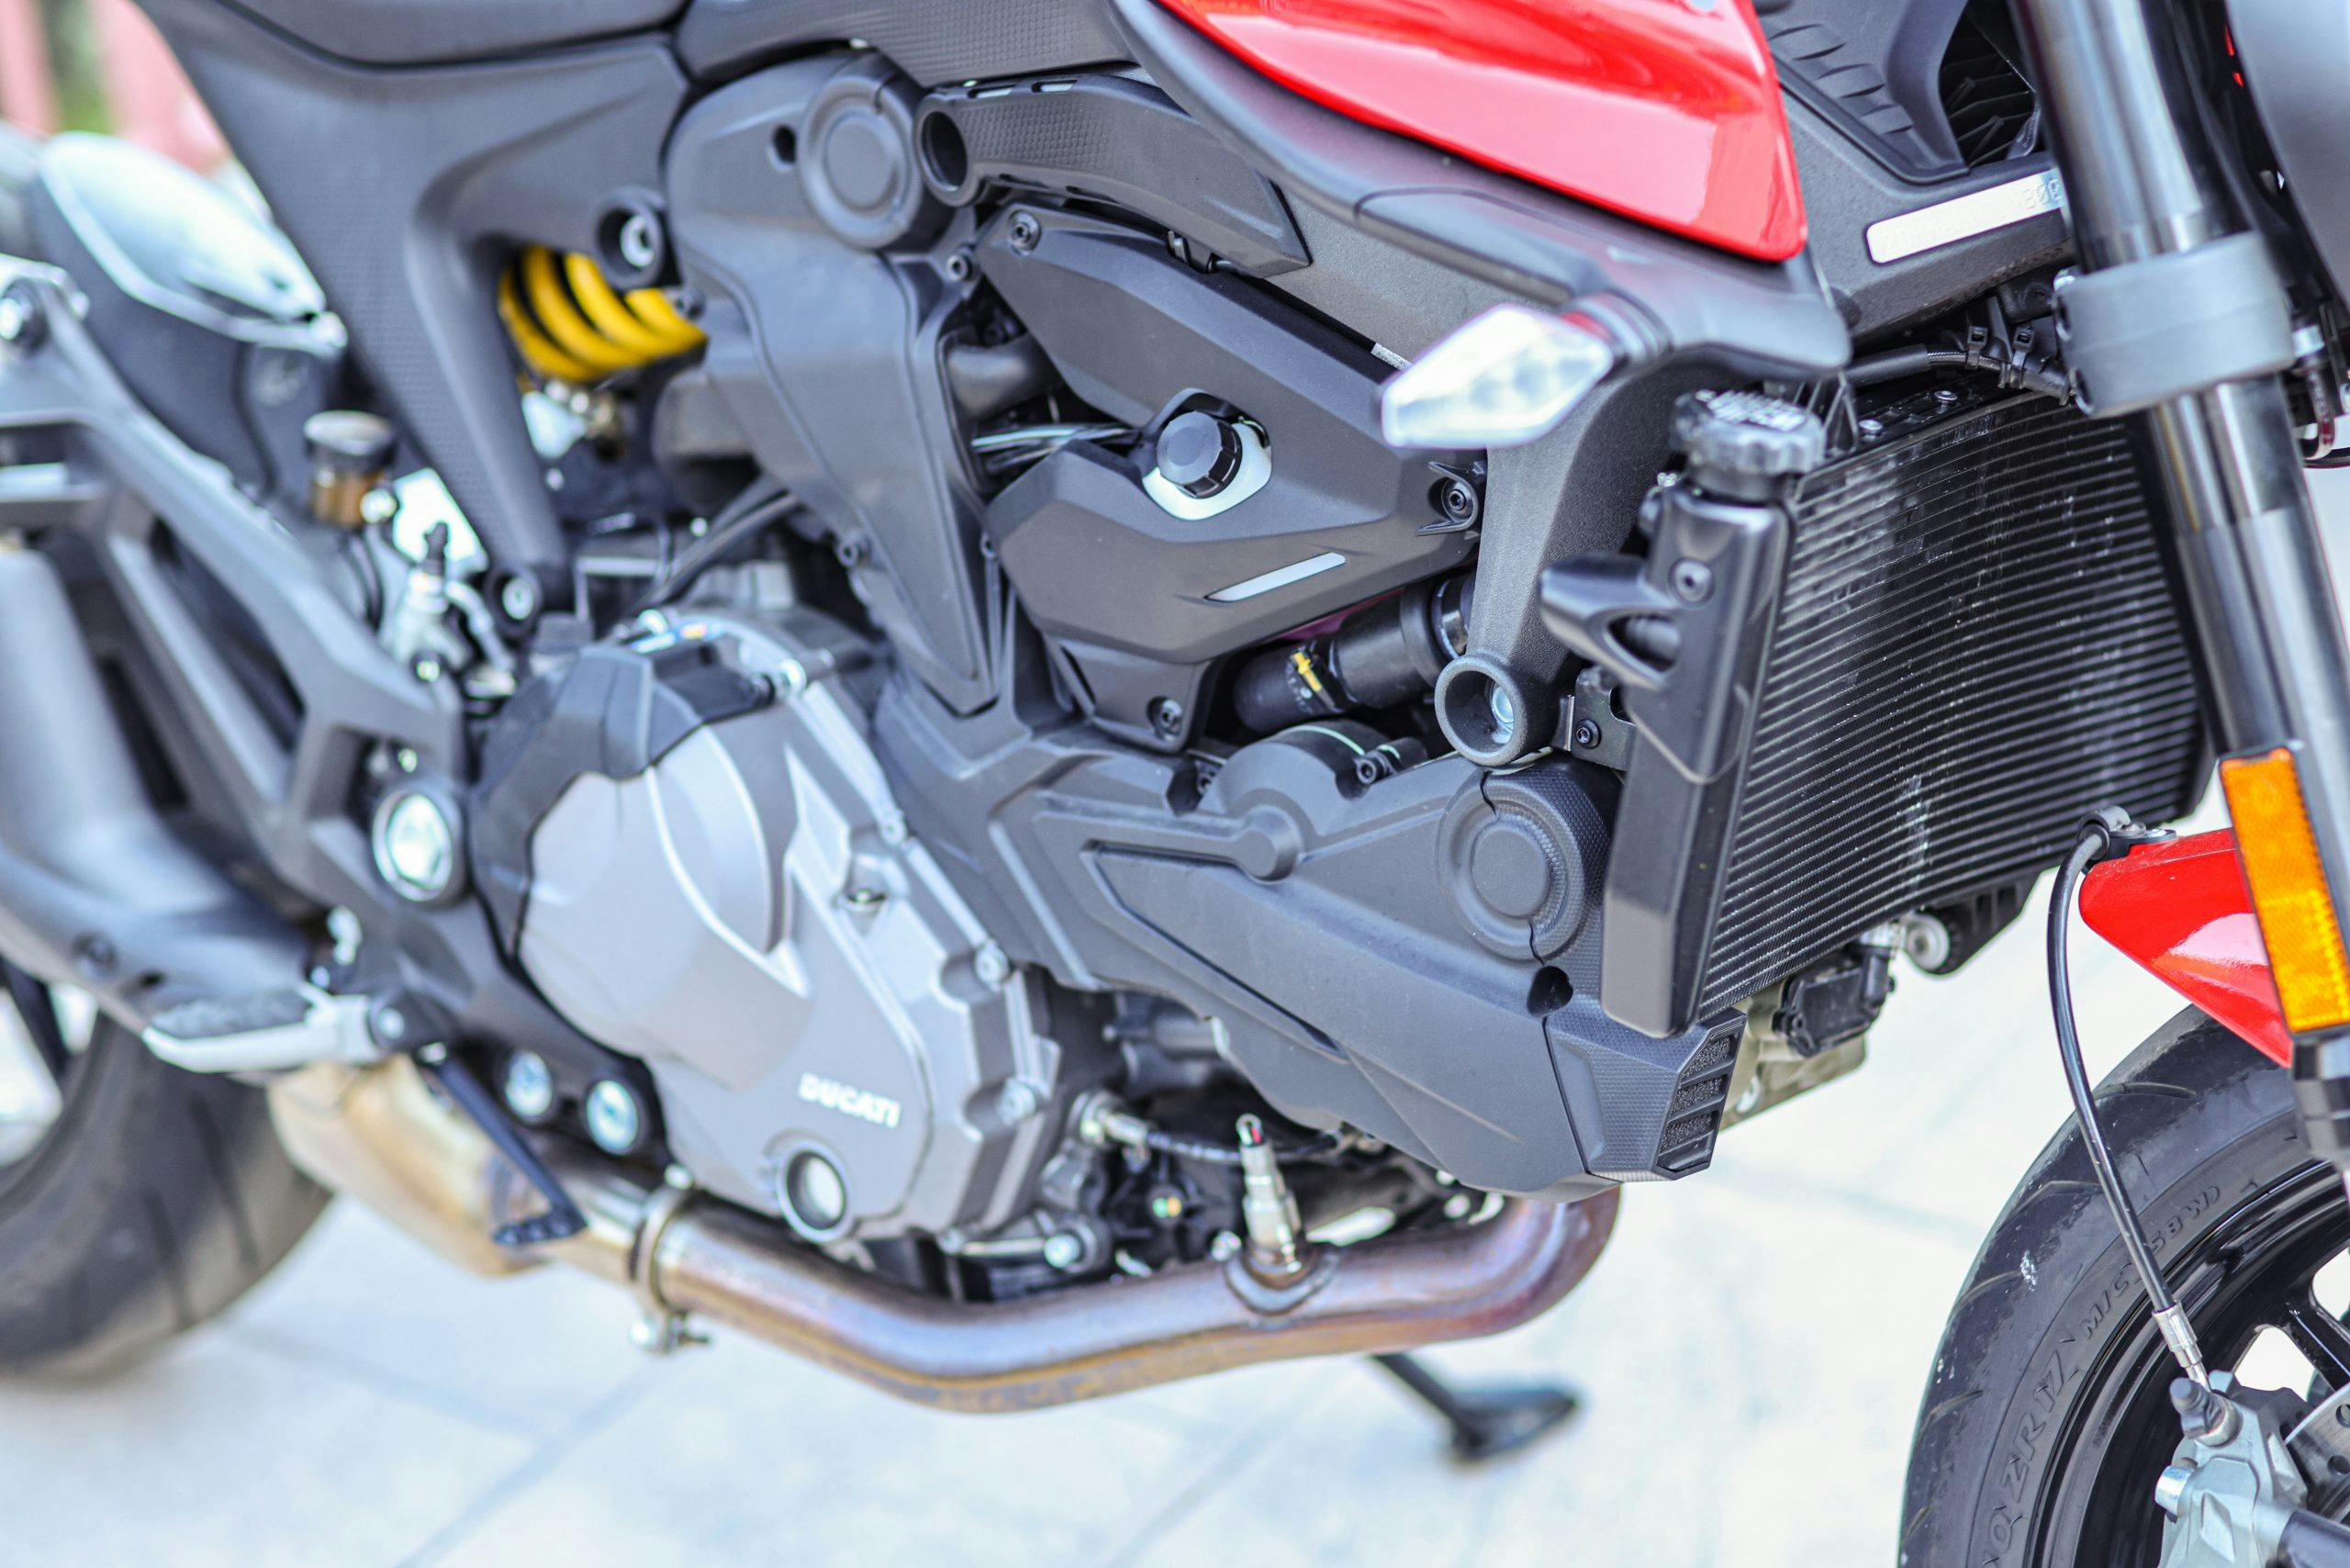 2022 Ducati Monster engine